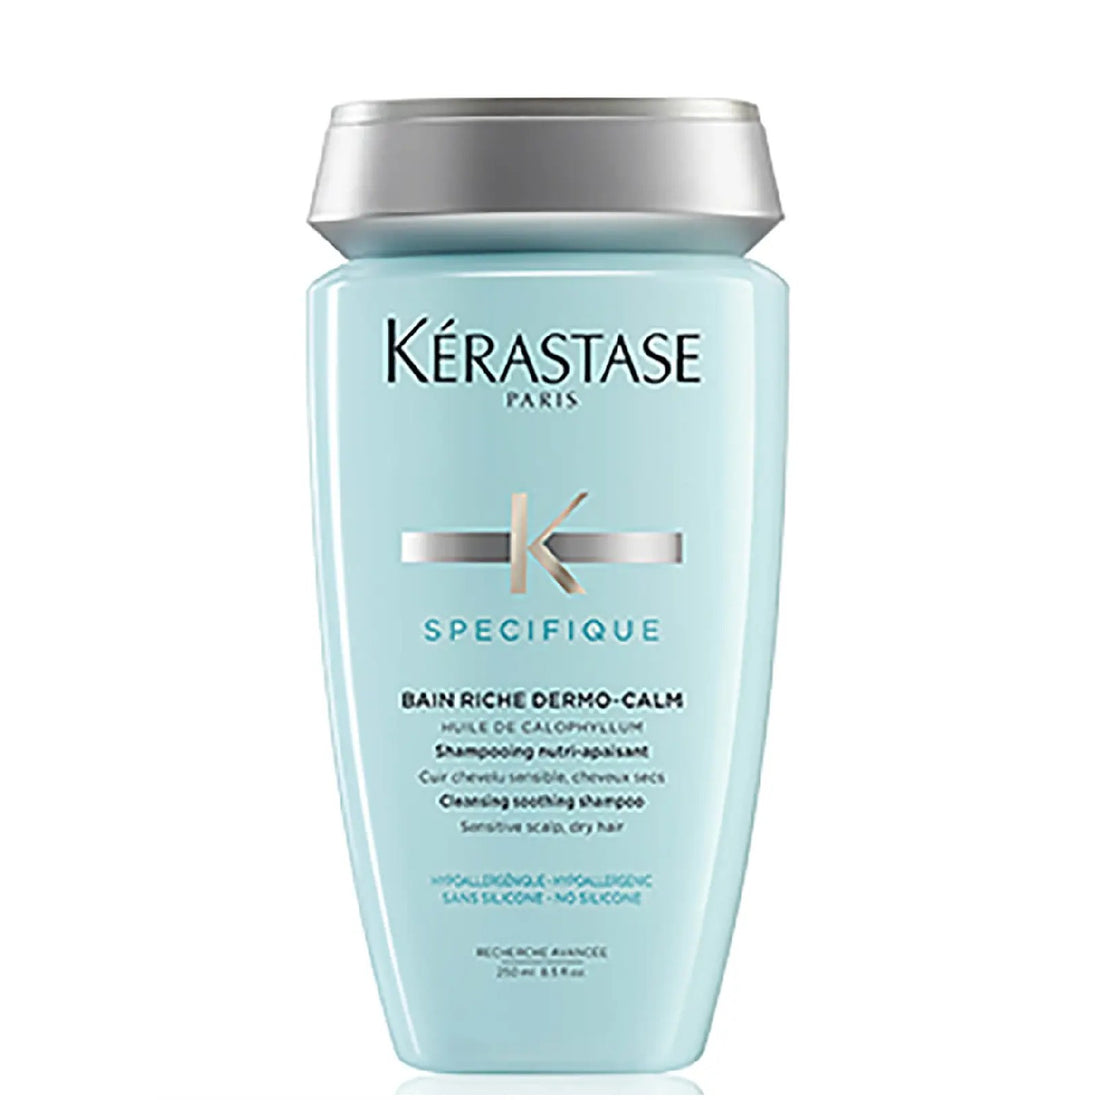 Kerastase Specifique Dermo-Calm Bain Riche Shampoo 250ml